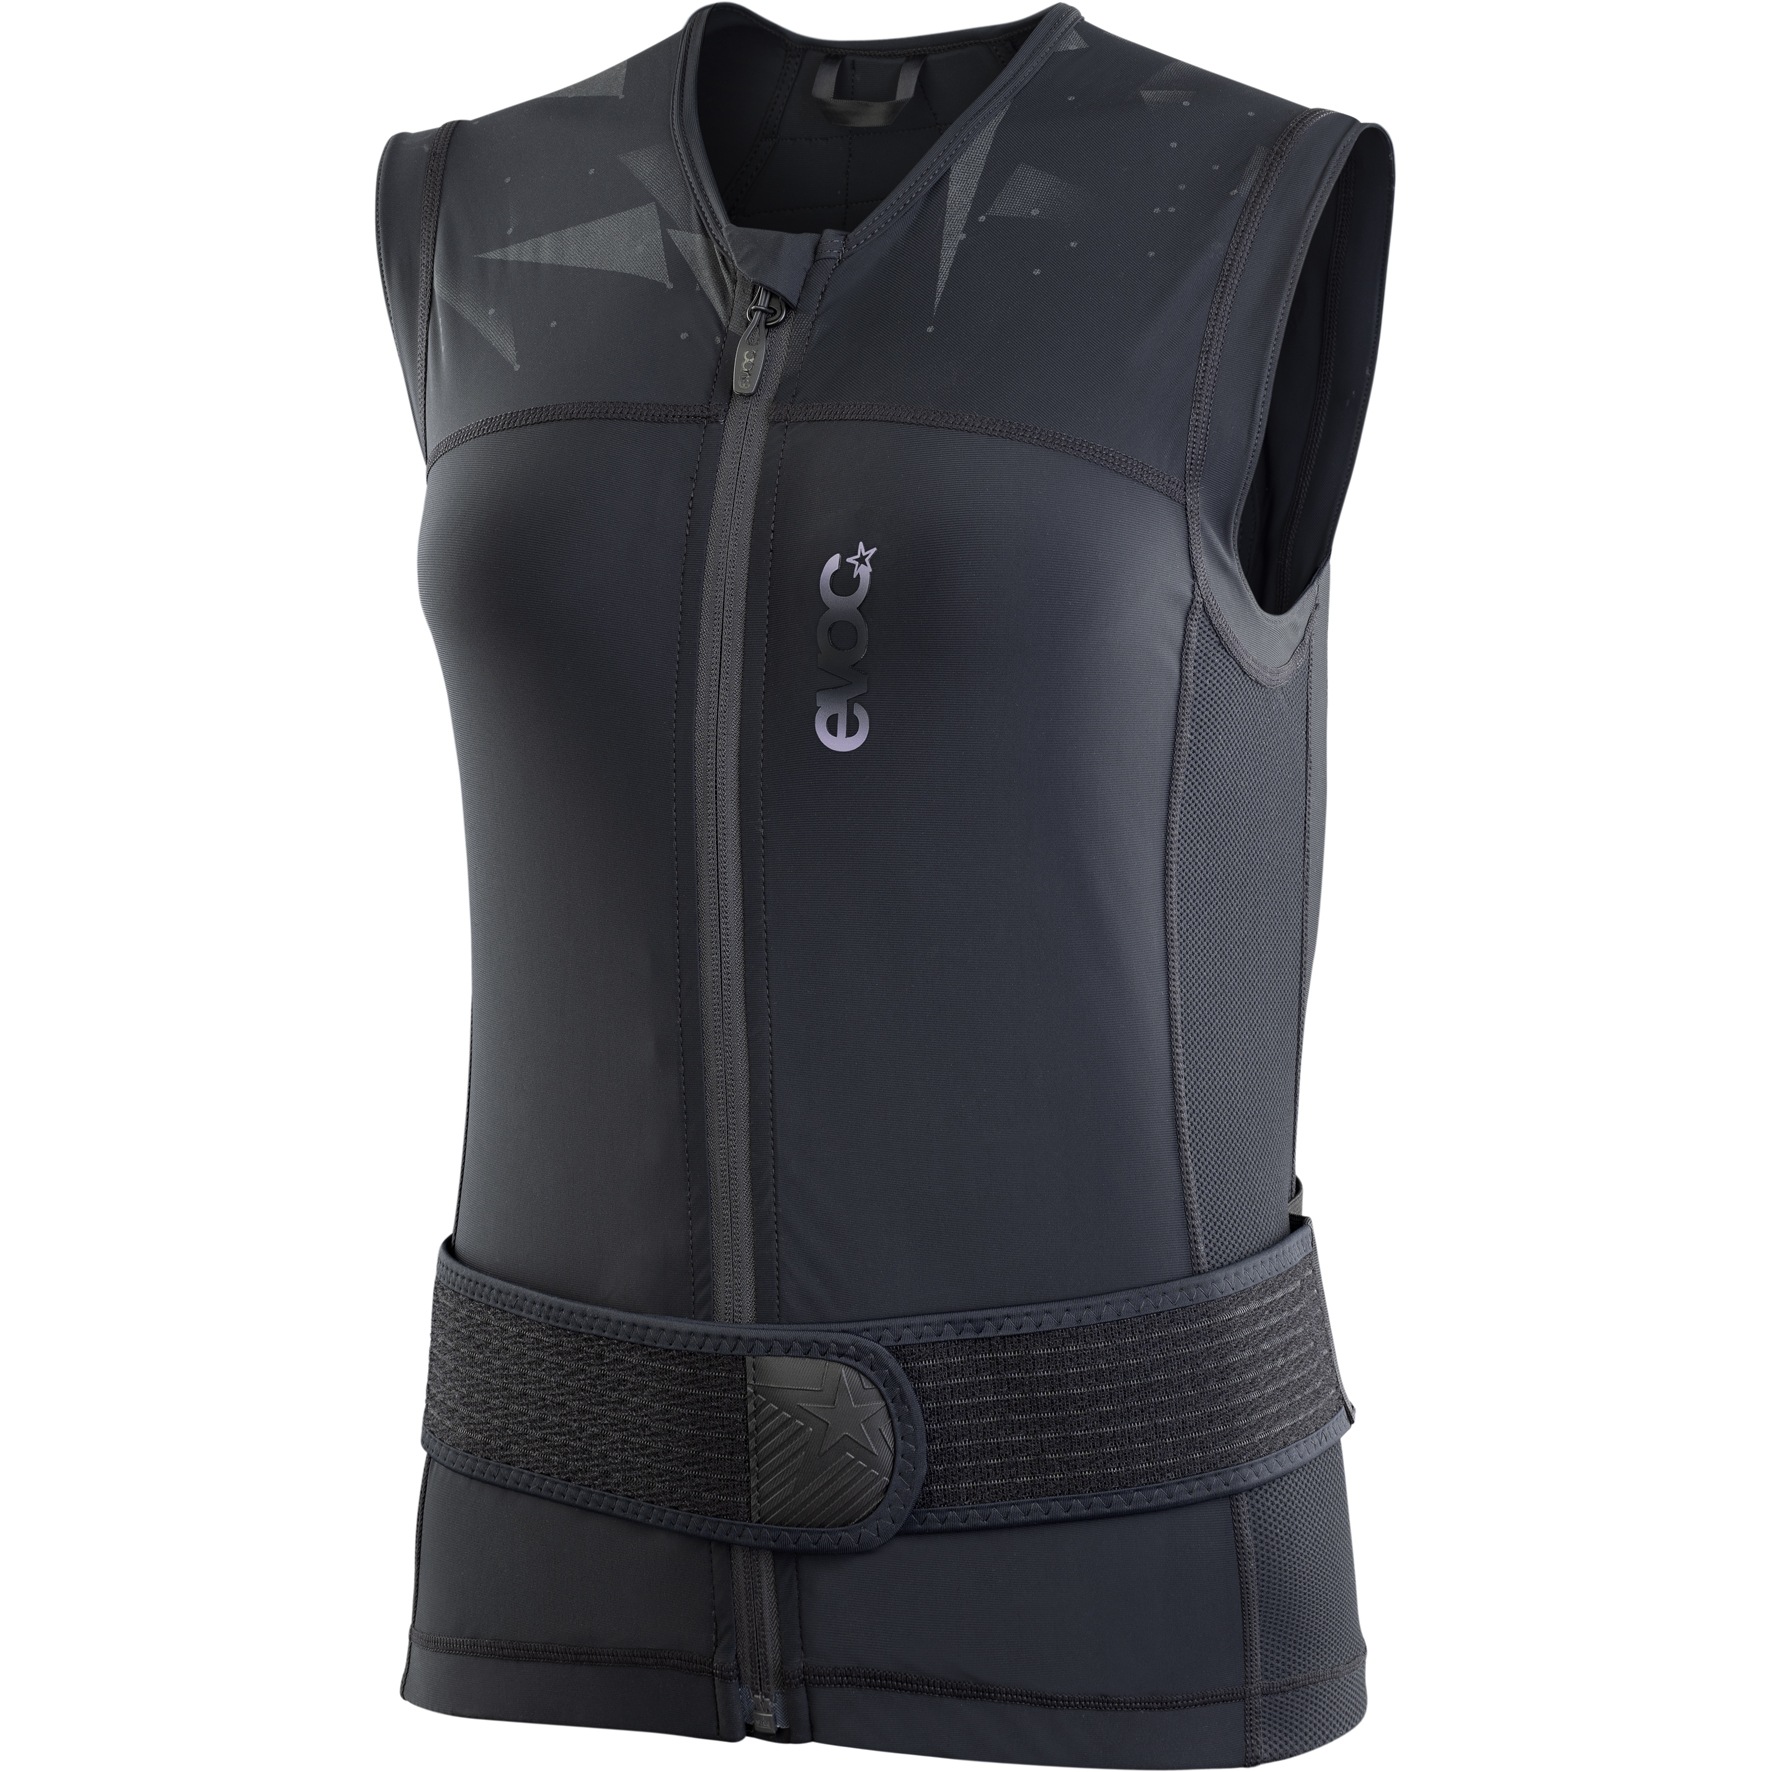 Productfoto van EVOC Protector Vest Pro Dames Bovenlichaam Protector - Zwart